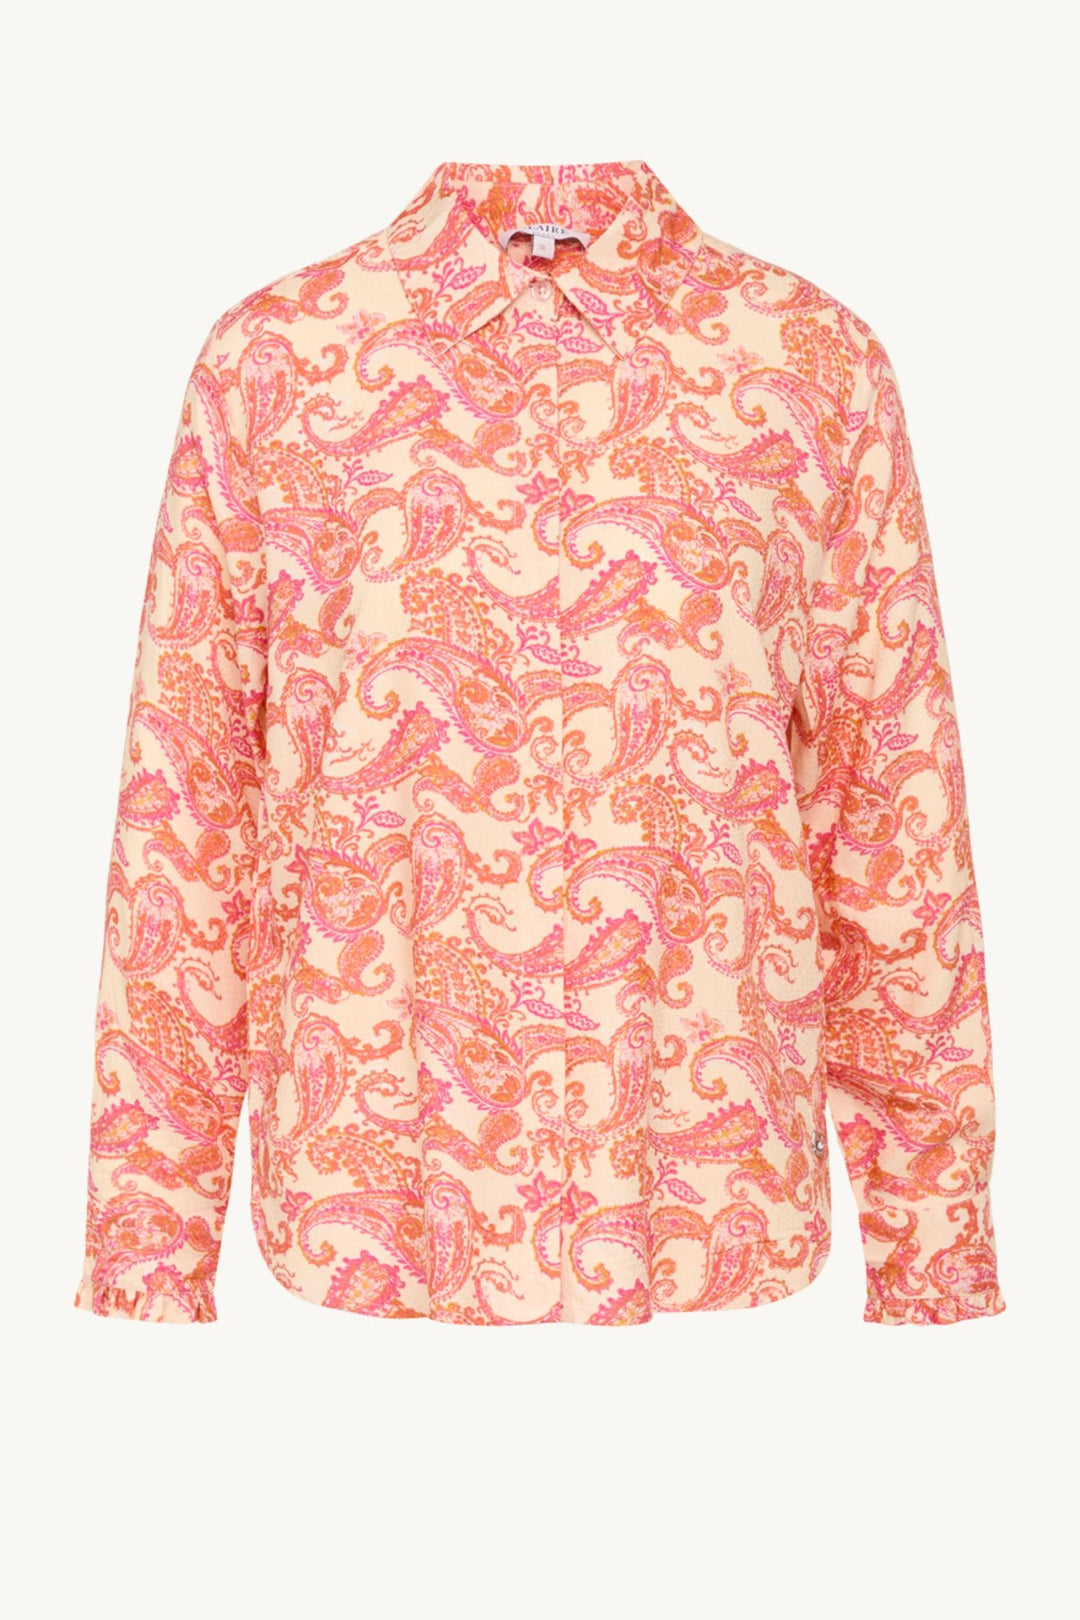 Riham-Cw Shirt Coral | Skjorter og bluser | Smuk - Dameklær på nett